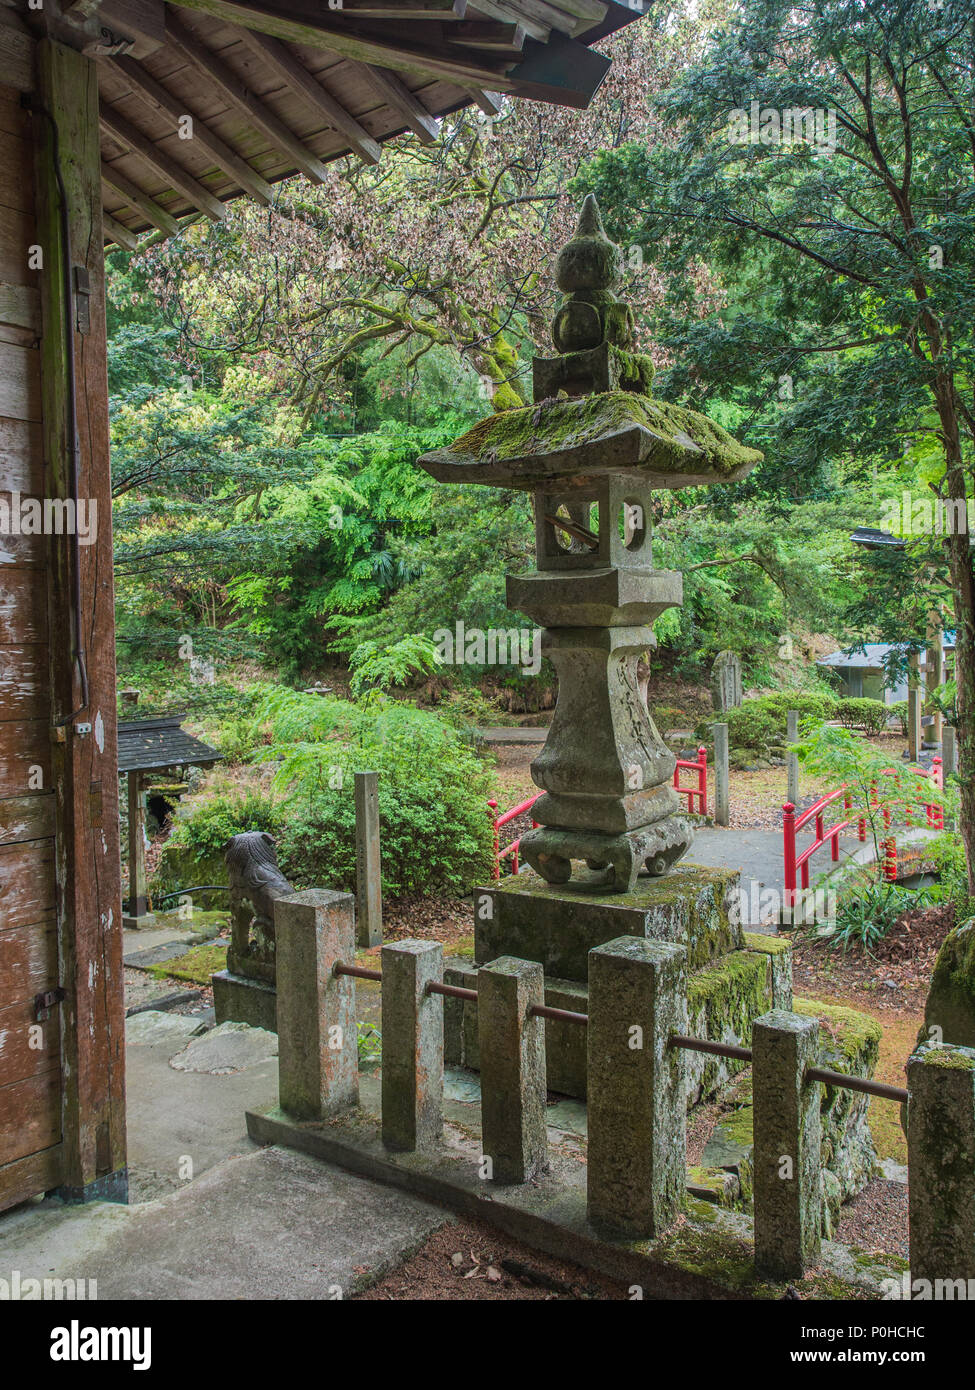 Ishidoro stone lantern at shinto shrine, Ehime, Shikoku, Japan Stock Photo